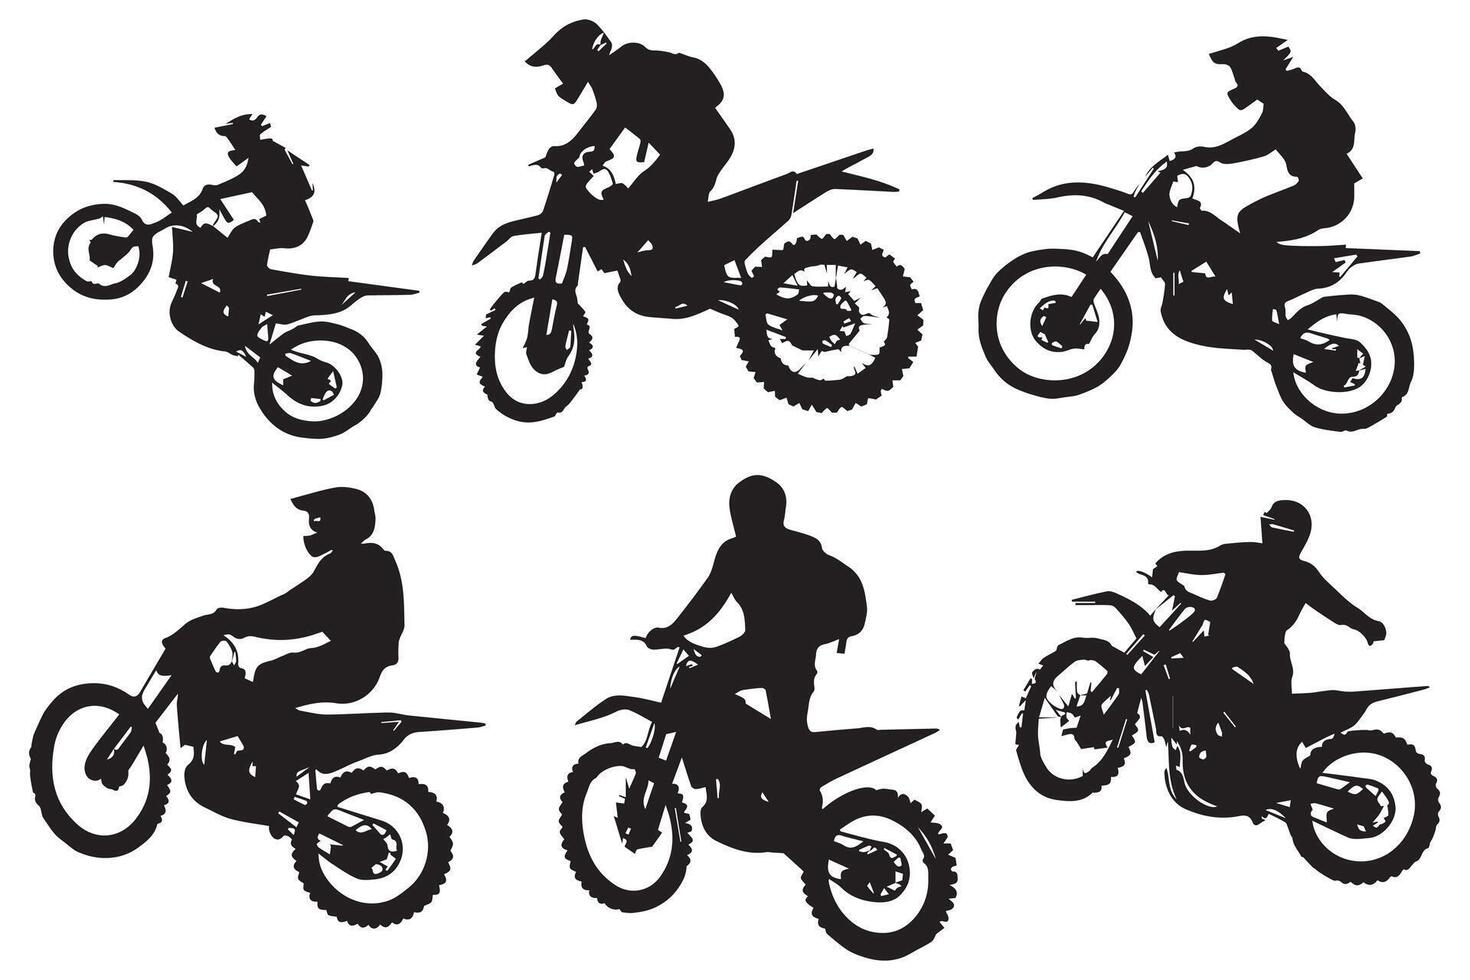 motocross sauter cavaliers, style libre, isolé silhouettes ensemble pro conception vecteur